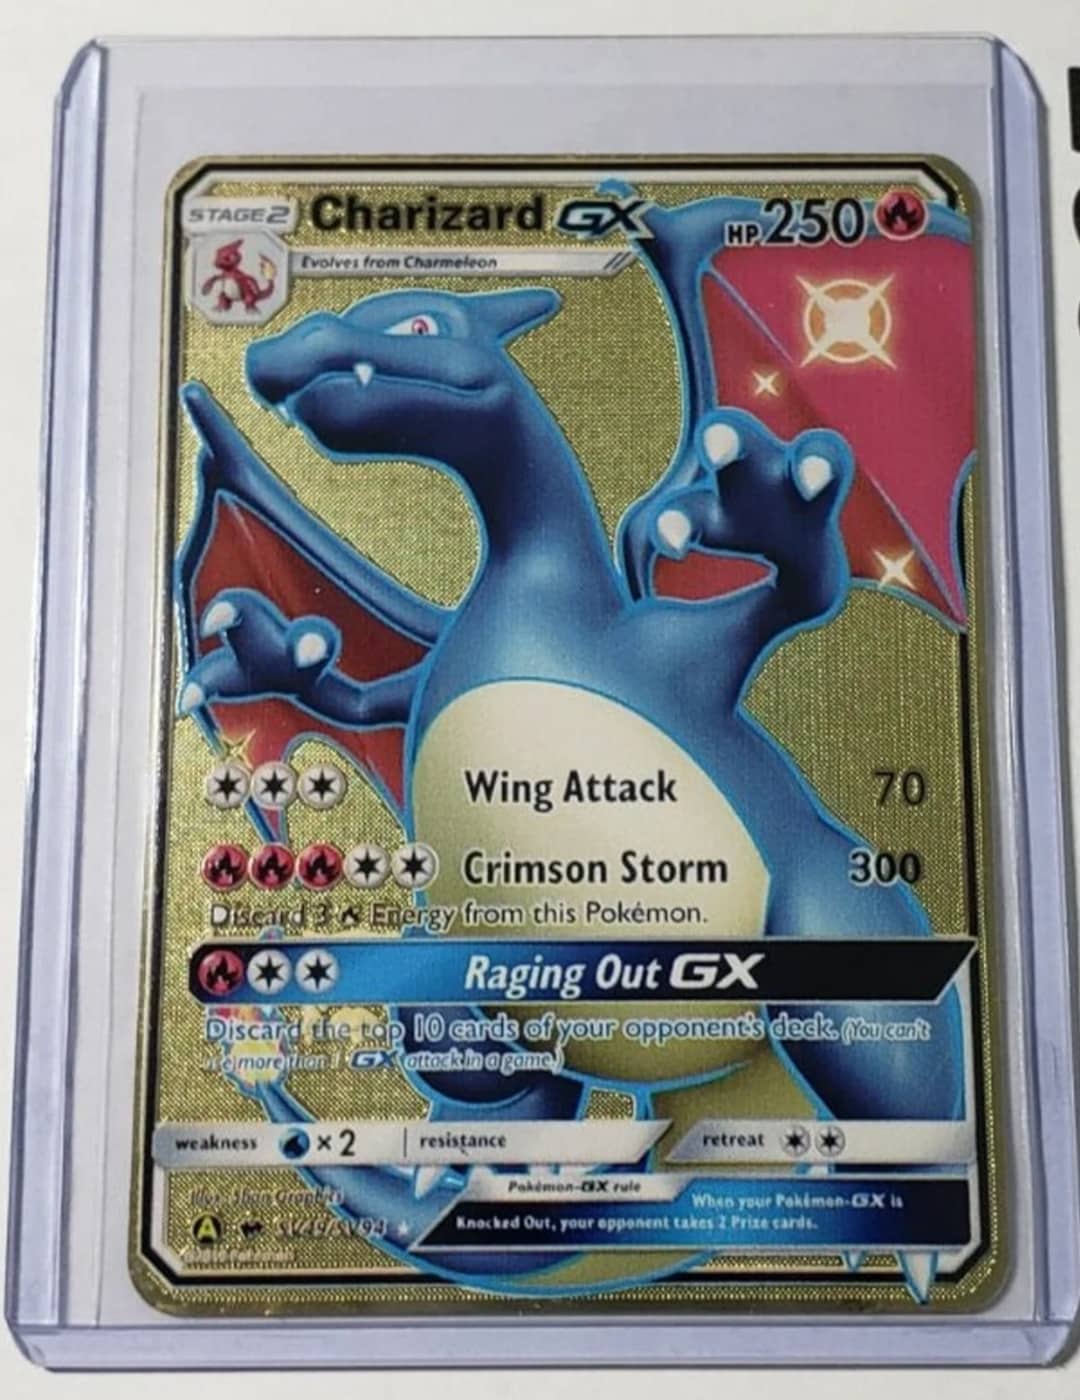 Charizard-GX, Pokémon